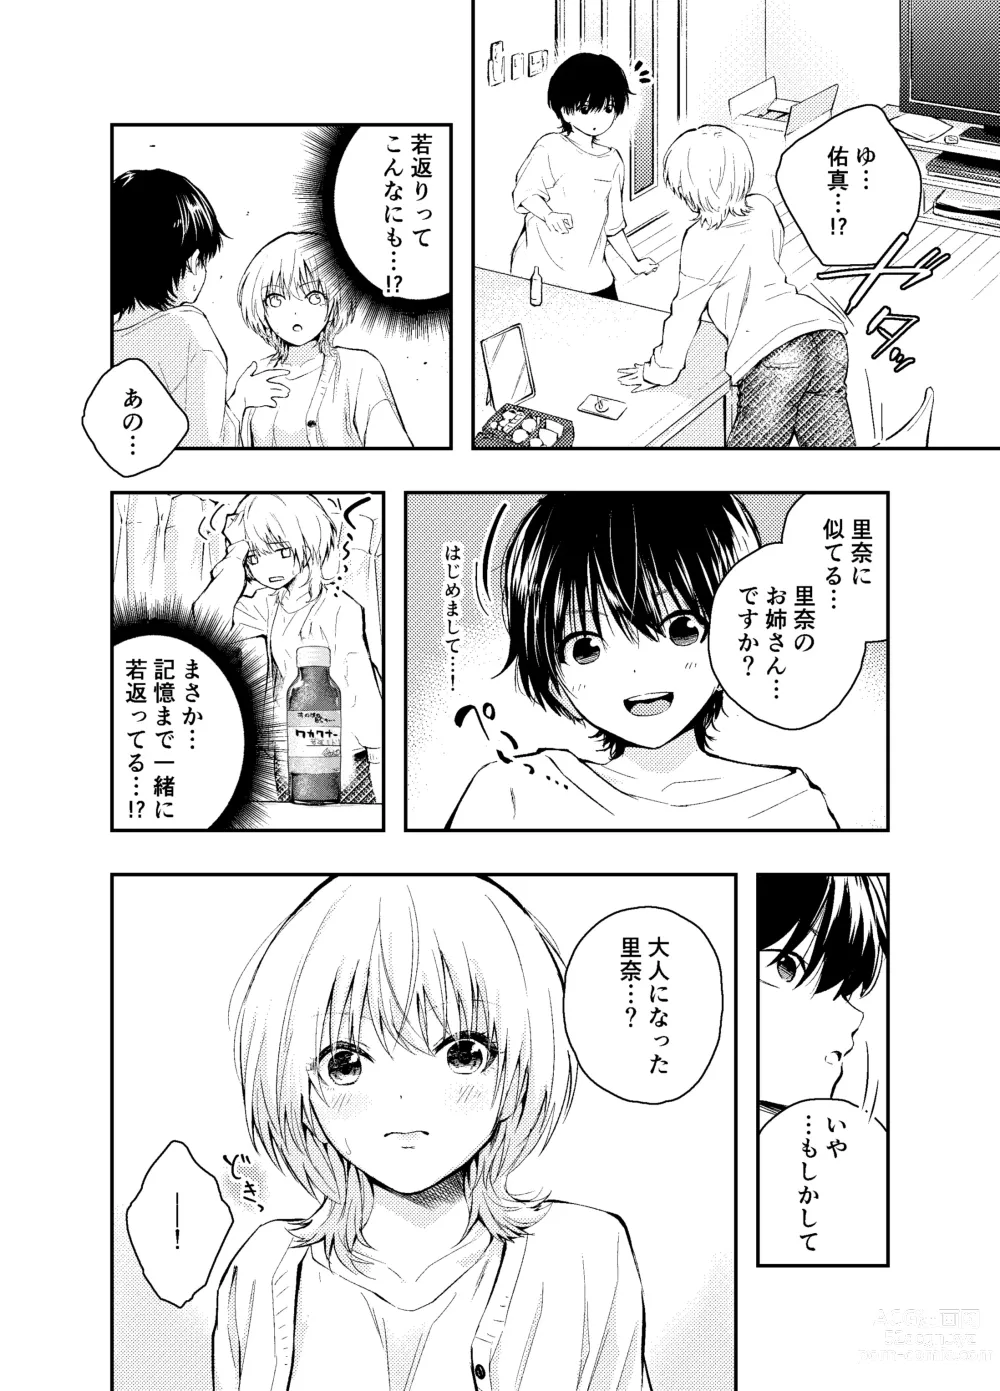 Page 6 of doujinshi Mukashi no Sugata ni Modotta Otto to no Sex wa Uwaki desu ka?